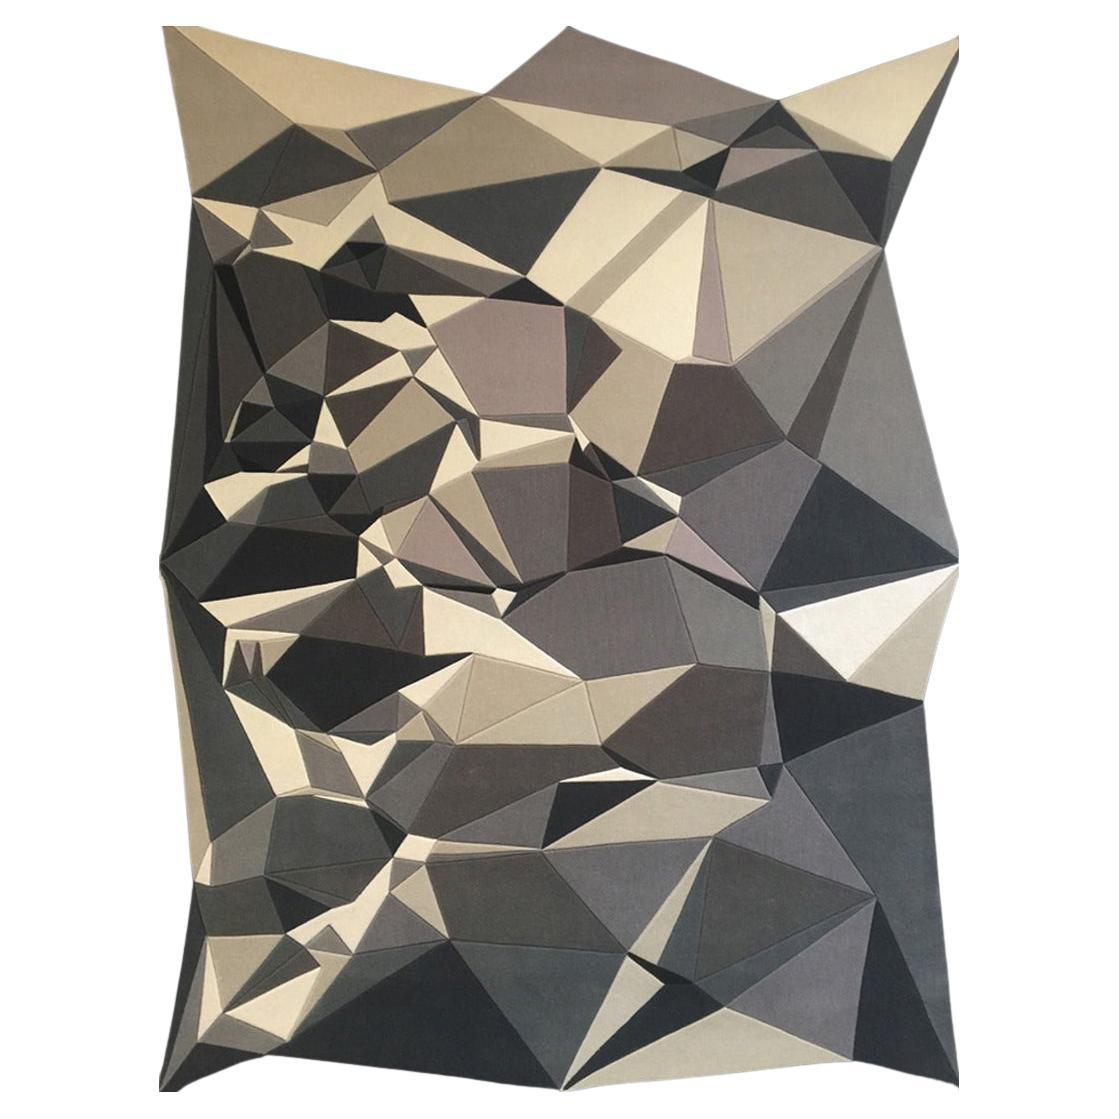 Dieses Origami-ähnliche Muster verwendet in seiner Komposition dreieckige Formen und schafft mit handgeschnitzten, kräftigen Farben juwelenähnliche Prismen in verschiedenen, bezaubernden Größen.

Erik Lindstrom bietet eine kuratierte Auswahl an